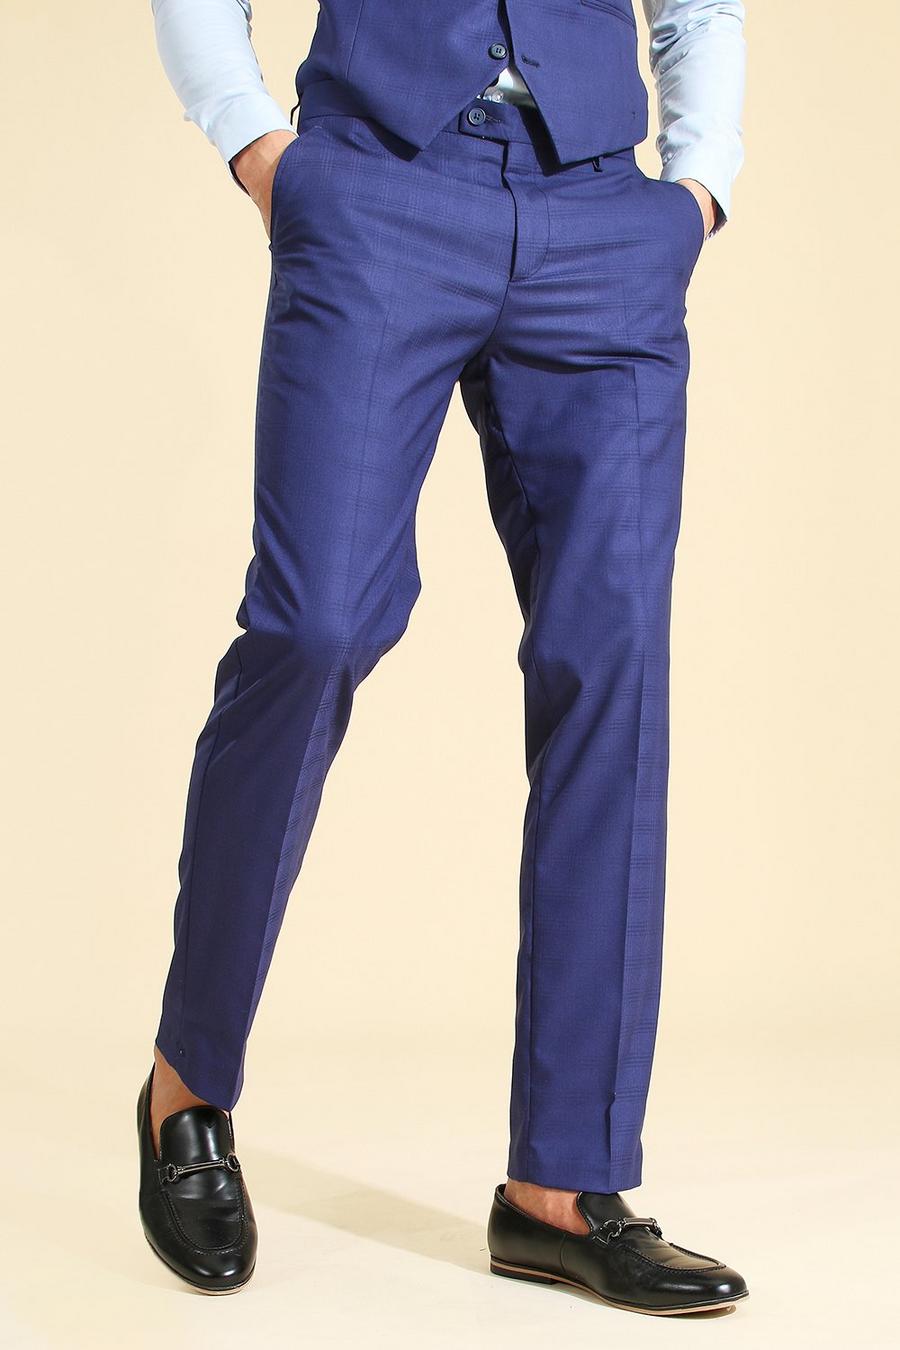 כחול מכנסיים לחליפה עם הדפס משבצות בגזרה צרה  image number 1